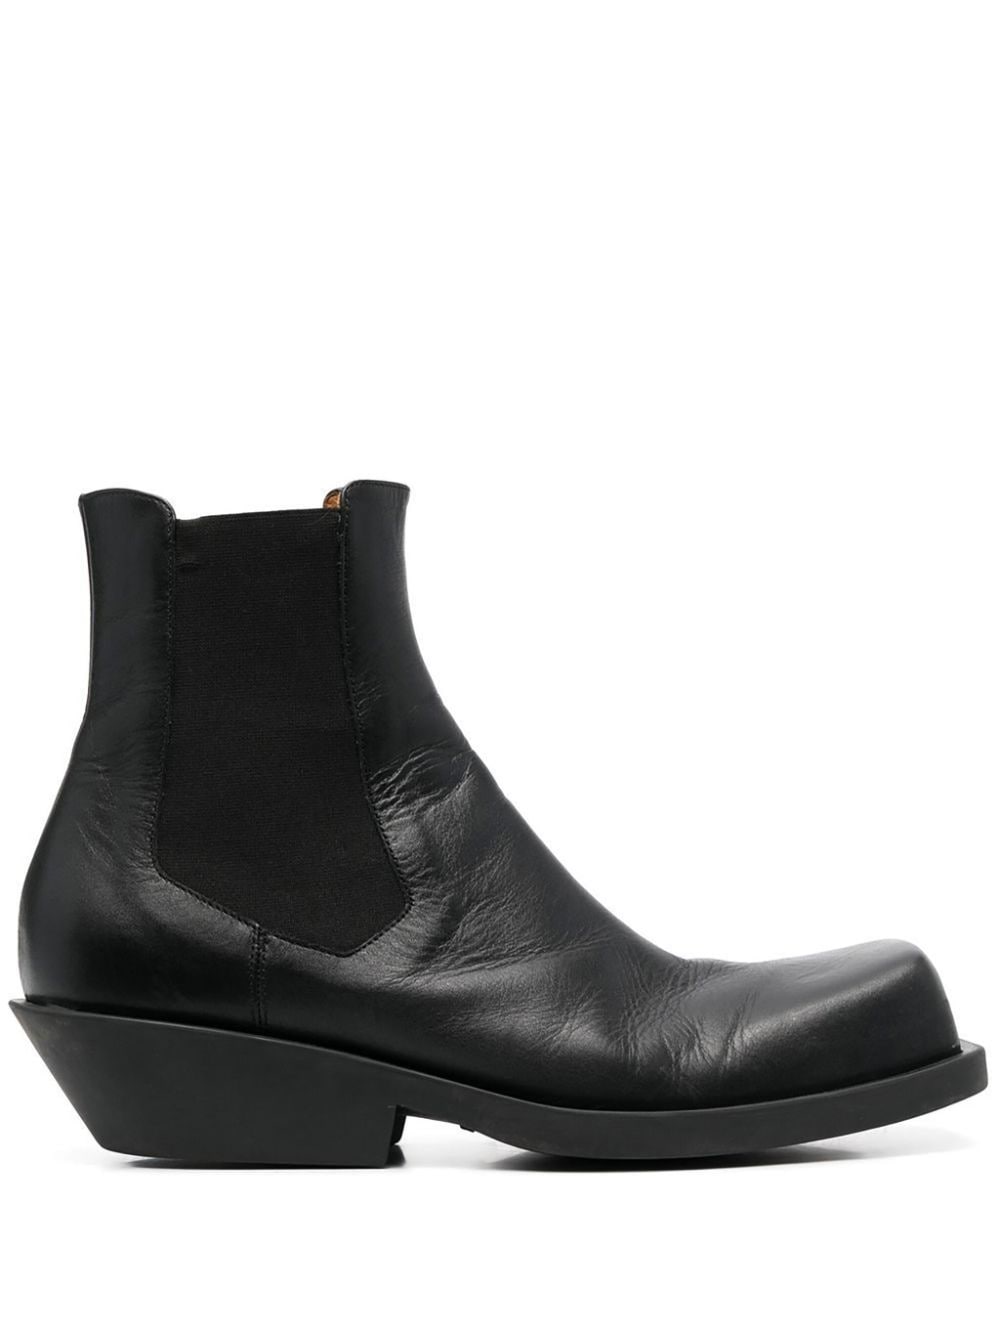 Marni black leather chelsea boots von Marni